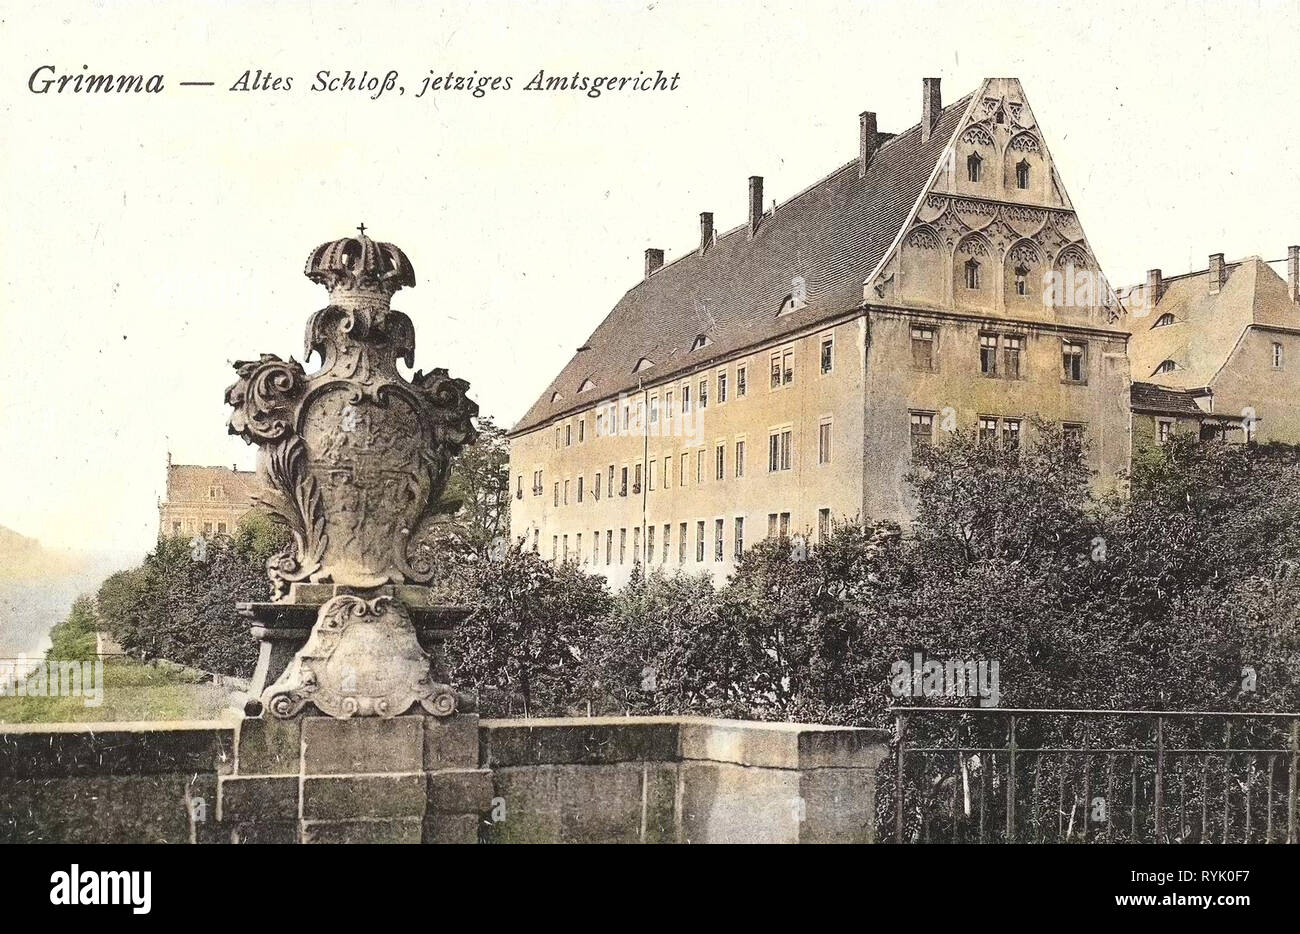 Schloss Grimma, 1913, Landkreis Leipzig, Grimma, Altes Schloß, jetzt Amtsgericht, Germany Stock Photo